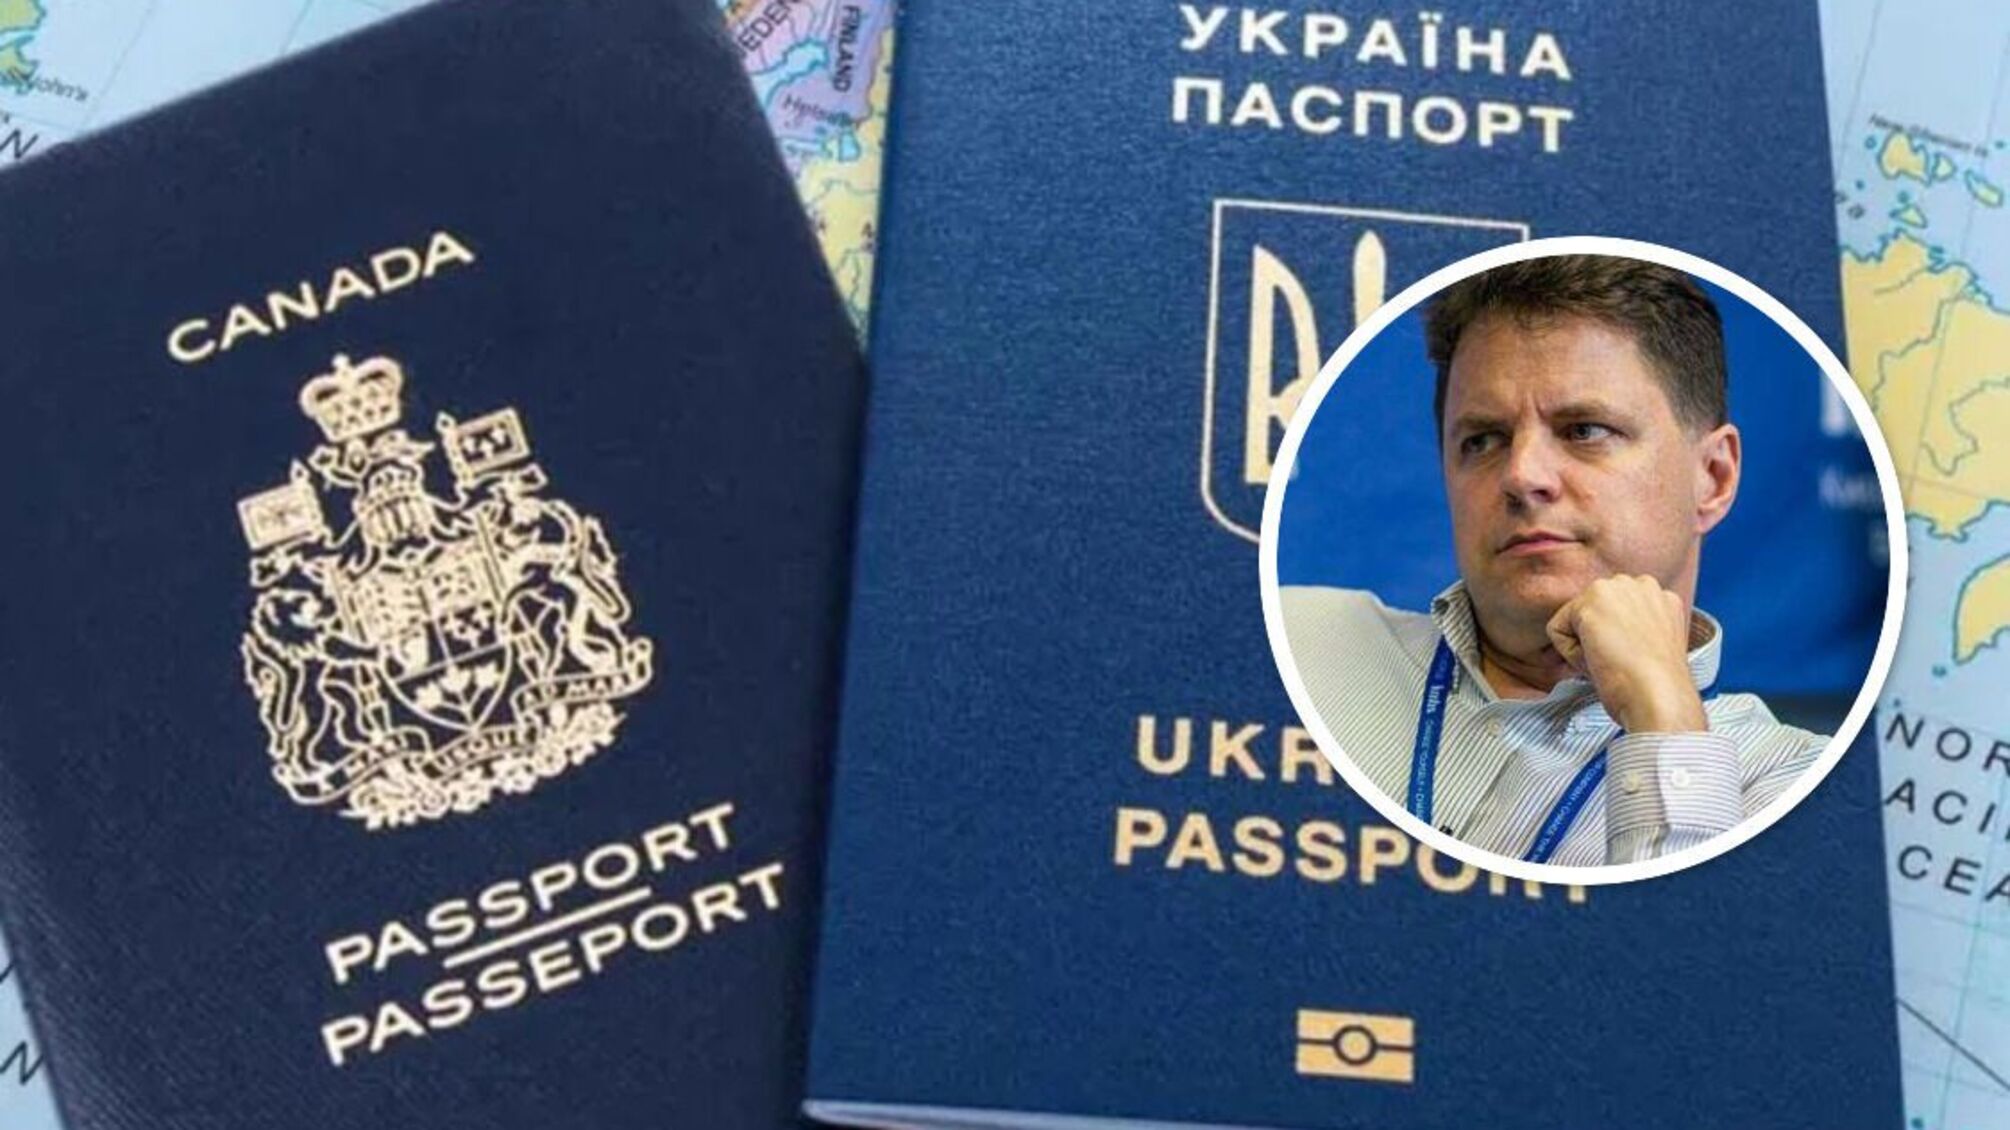 Заместитель министра образования Винницкий может скрывать двойное гражданство, – журналист